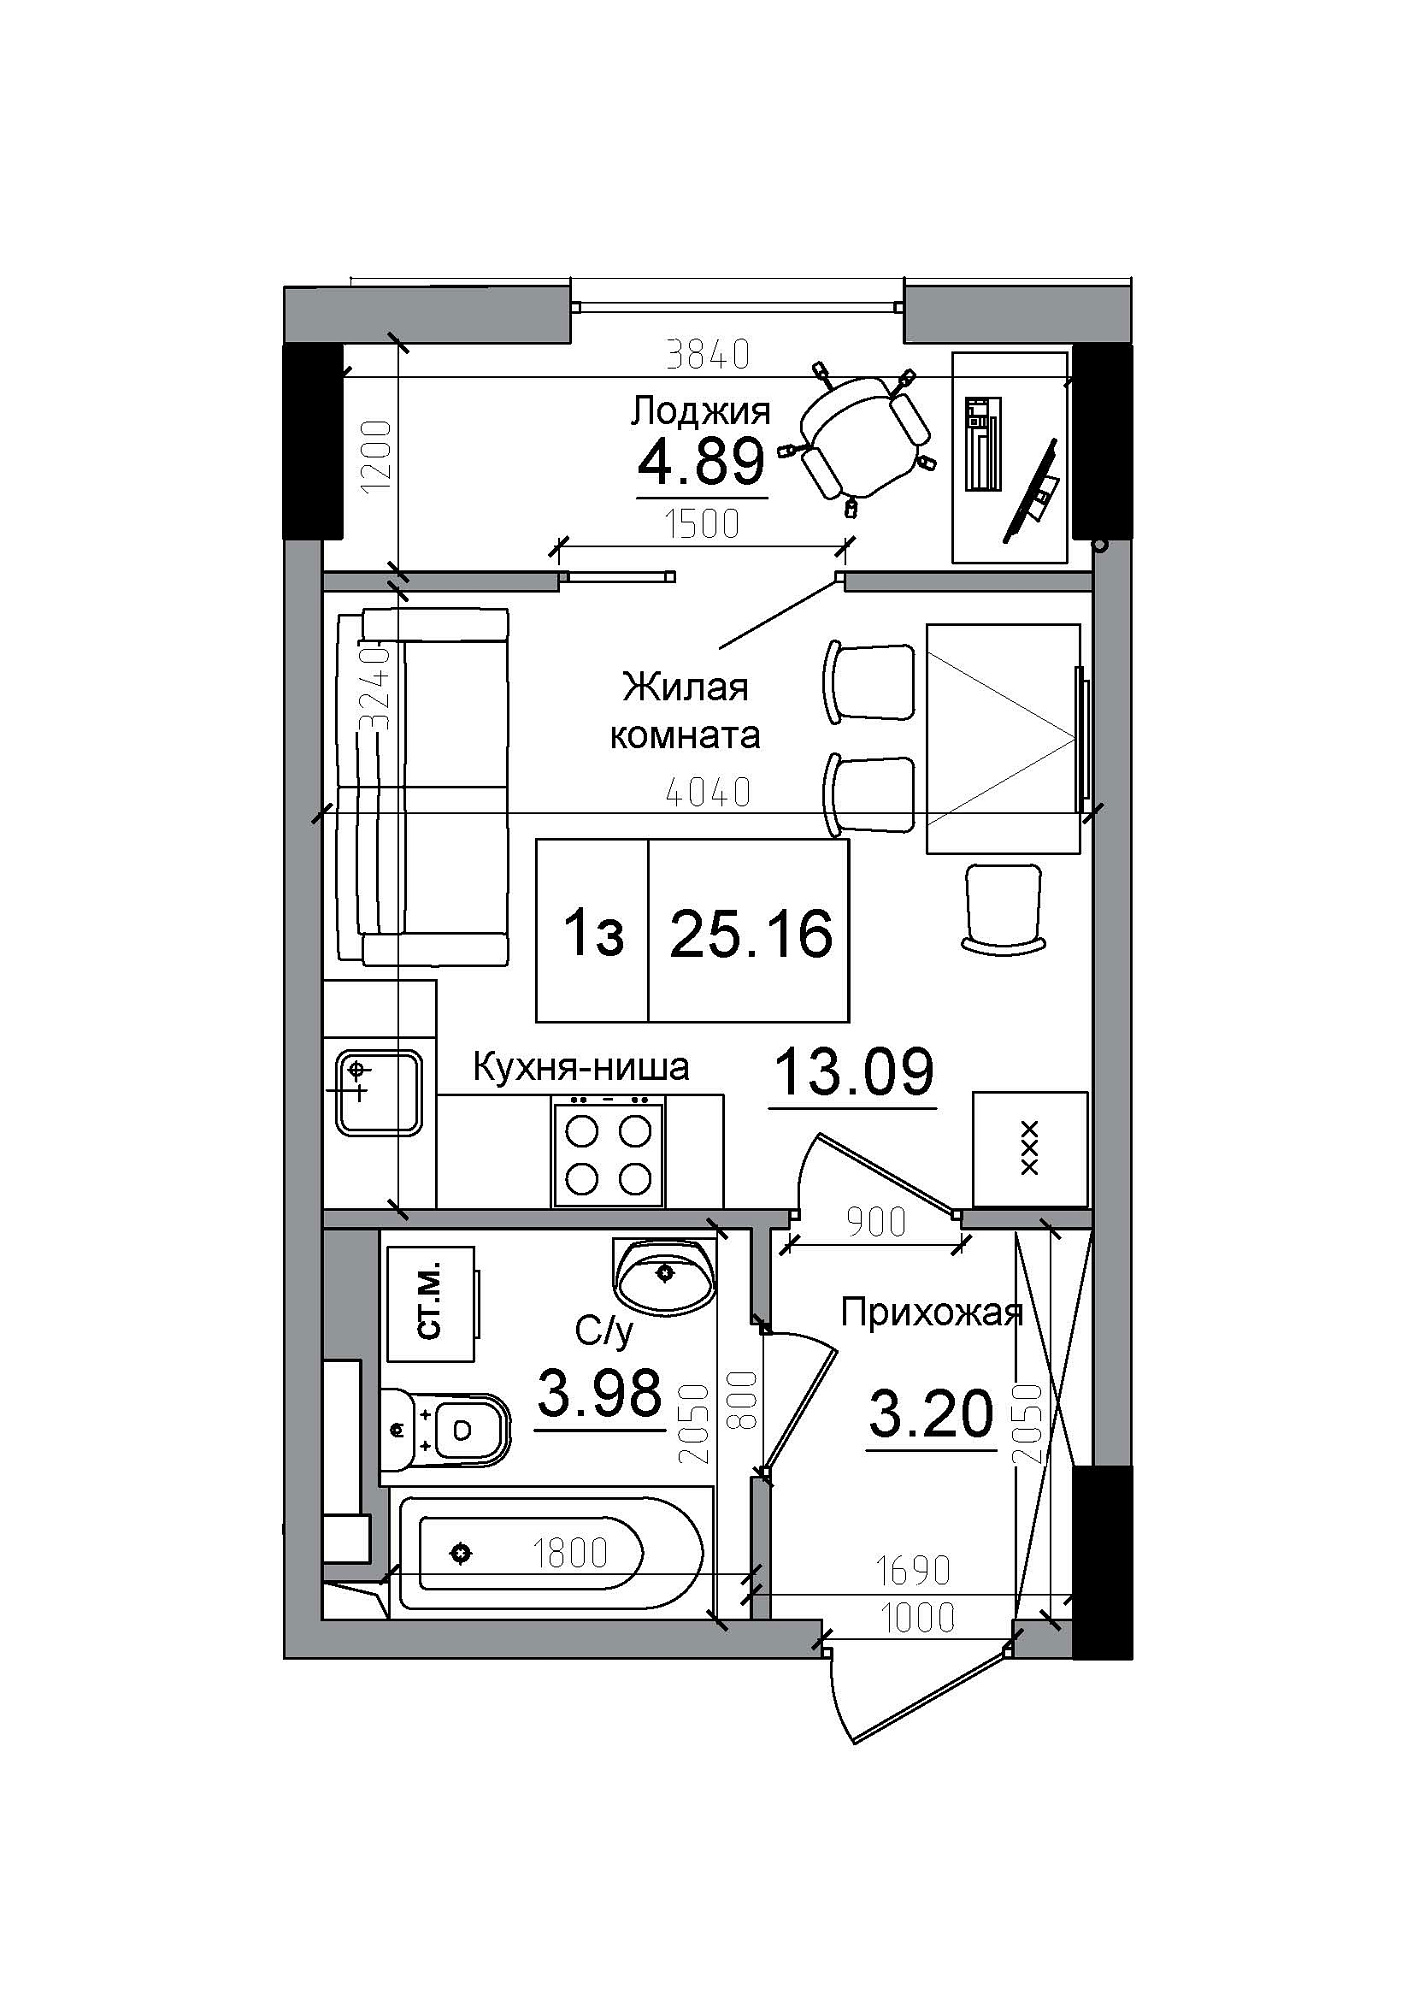 Планування Smart-квартира площею 25.16м2, AB-12-11/00009.